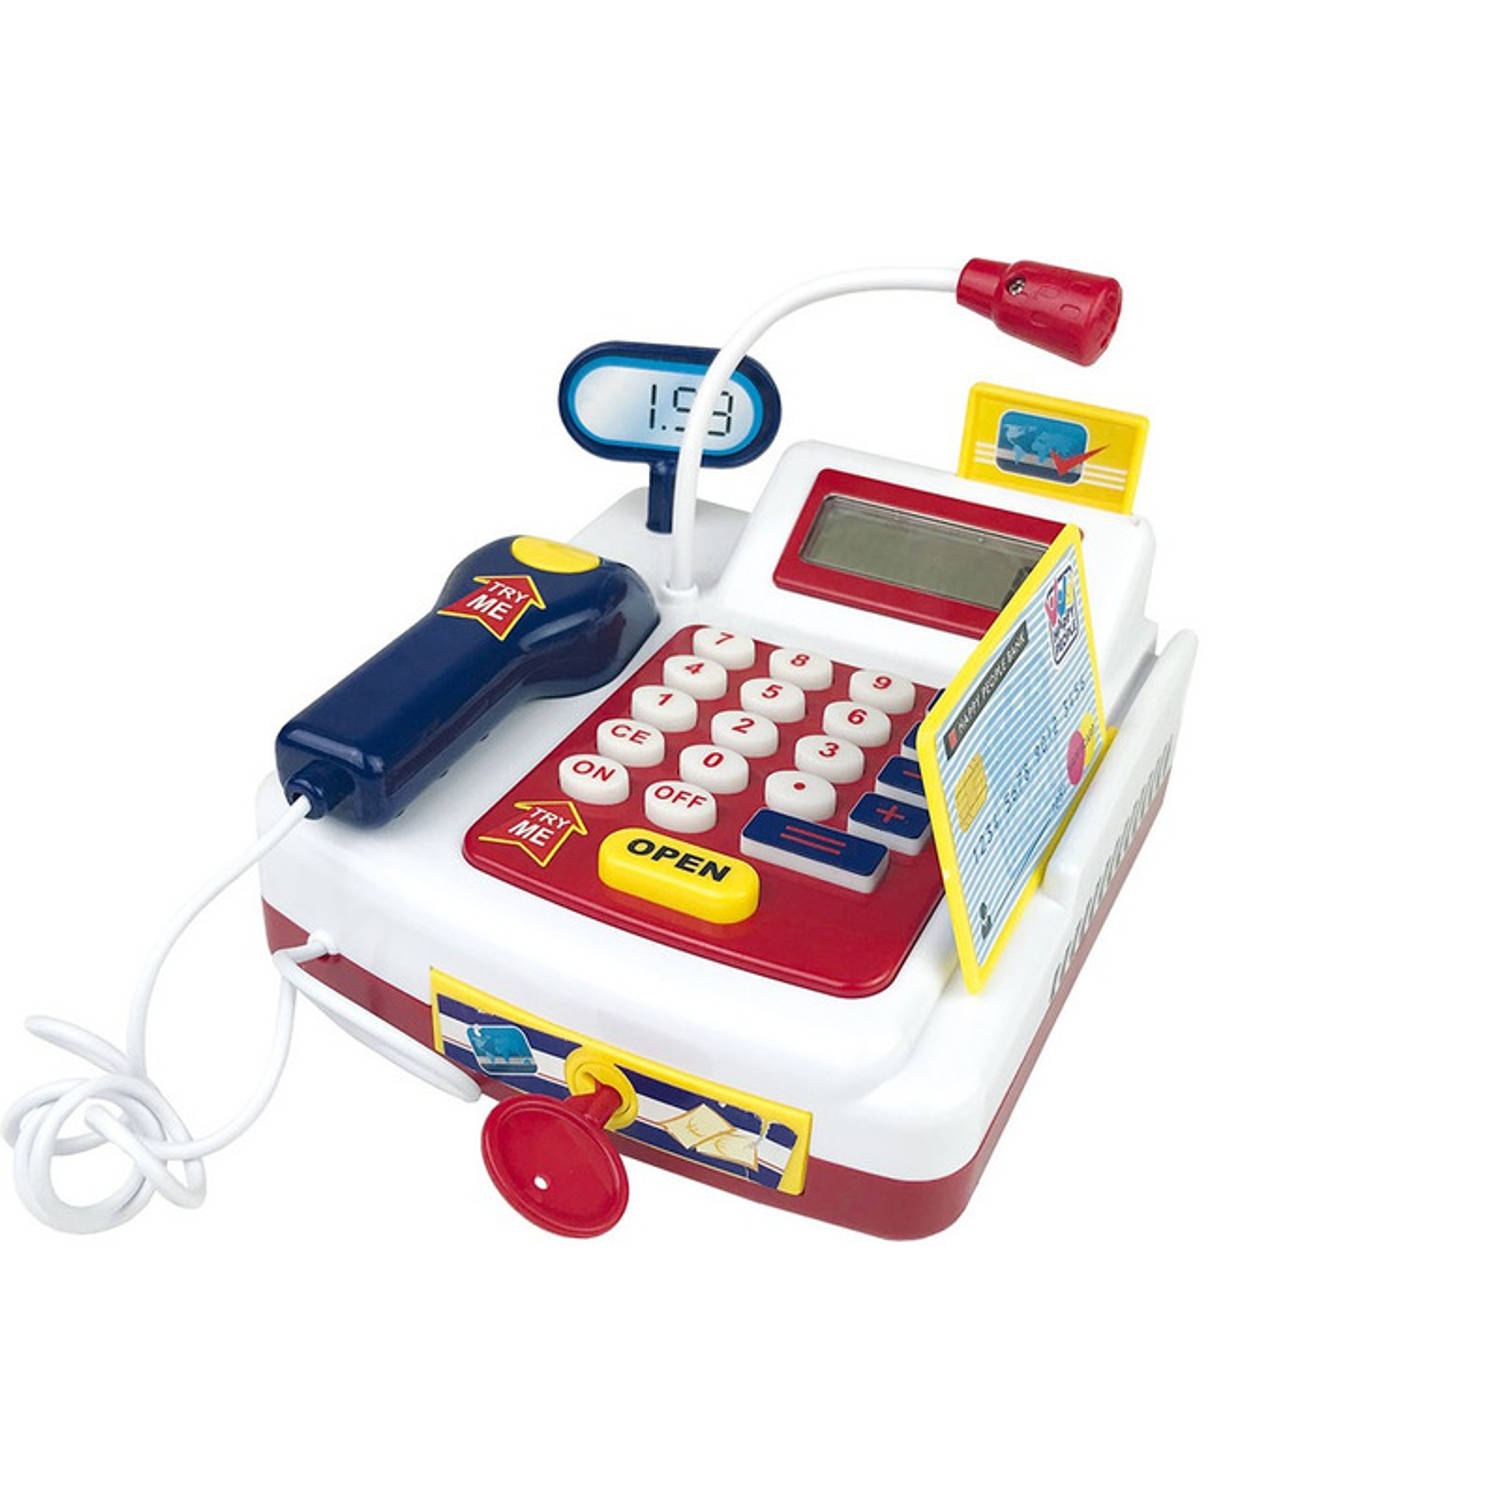 Speelgoed Kassa Met Rekenmachine 9 X 9 X 7 Cm Voor Kinderen Speelgoedkassa